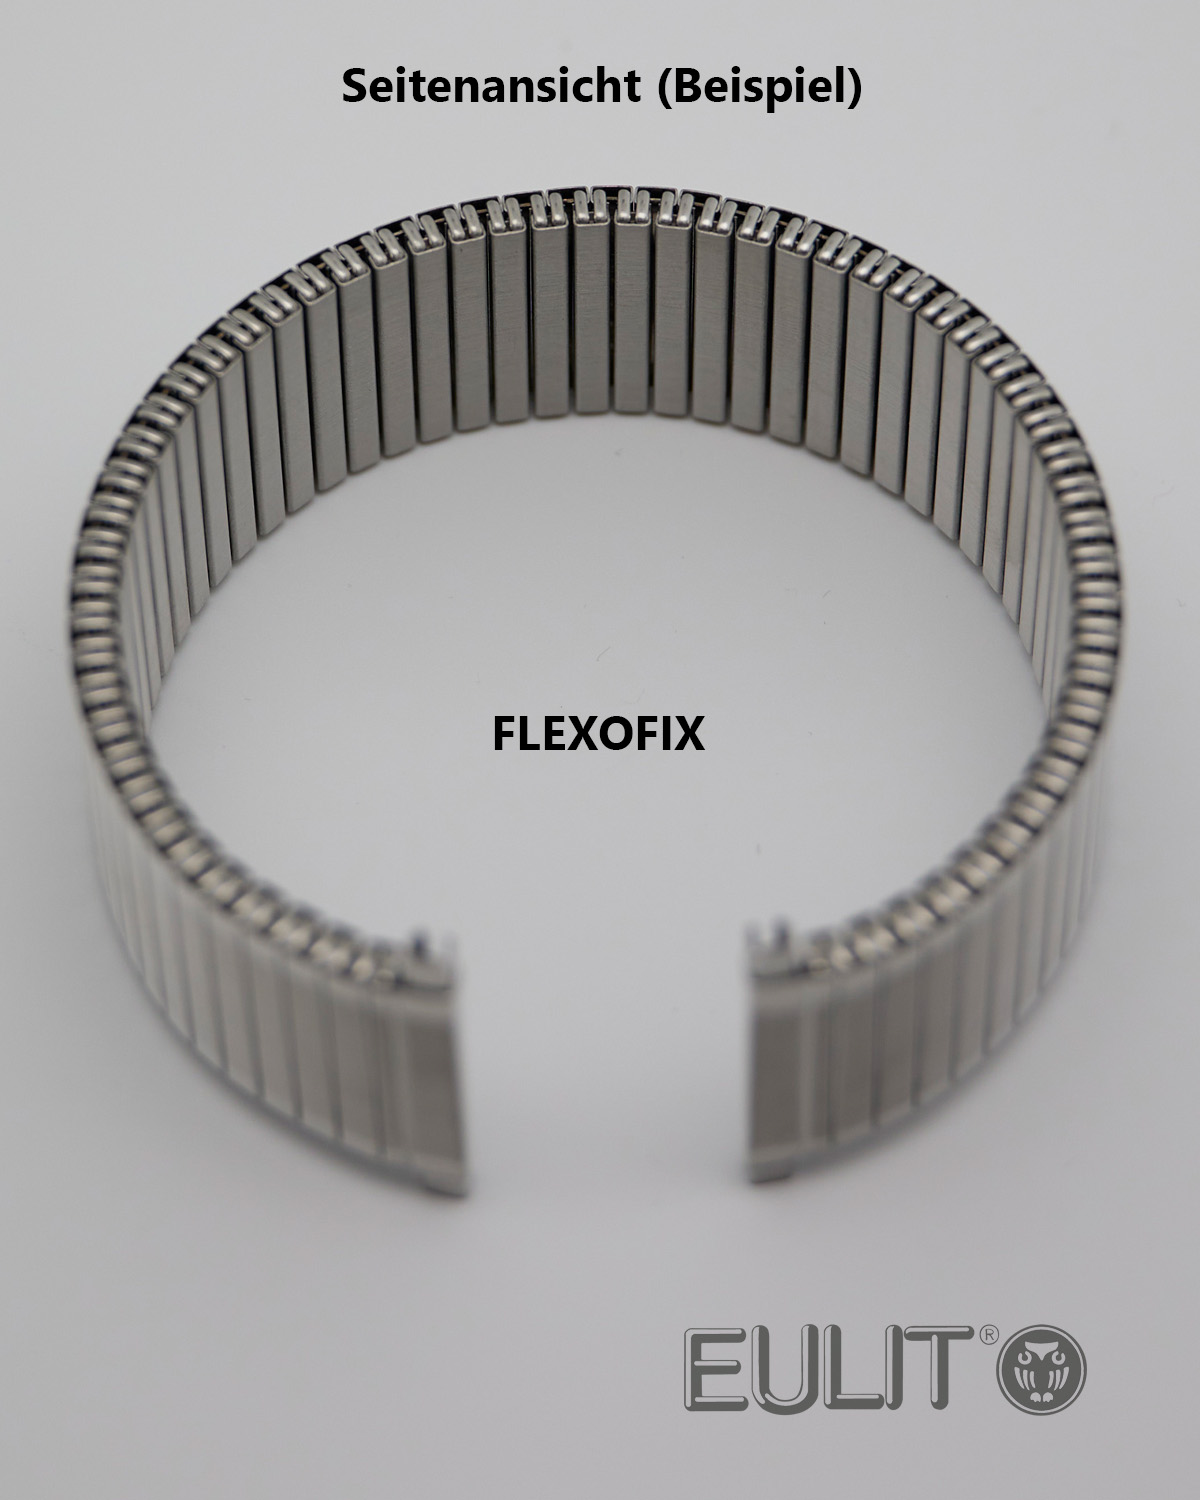 76-410181 EULIT FLEXOFIX 18-20mm Edelstahl